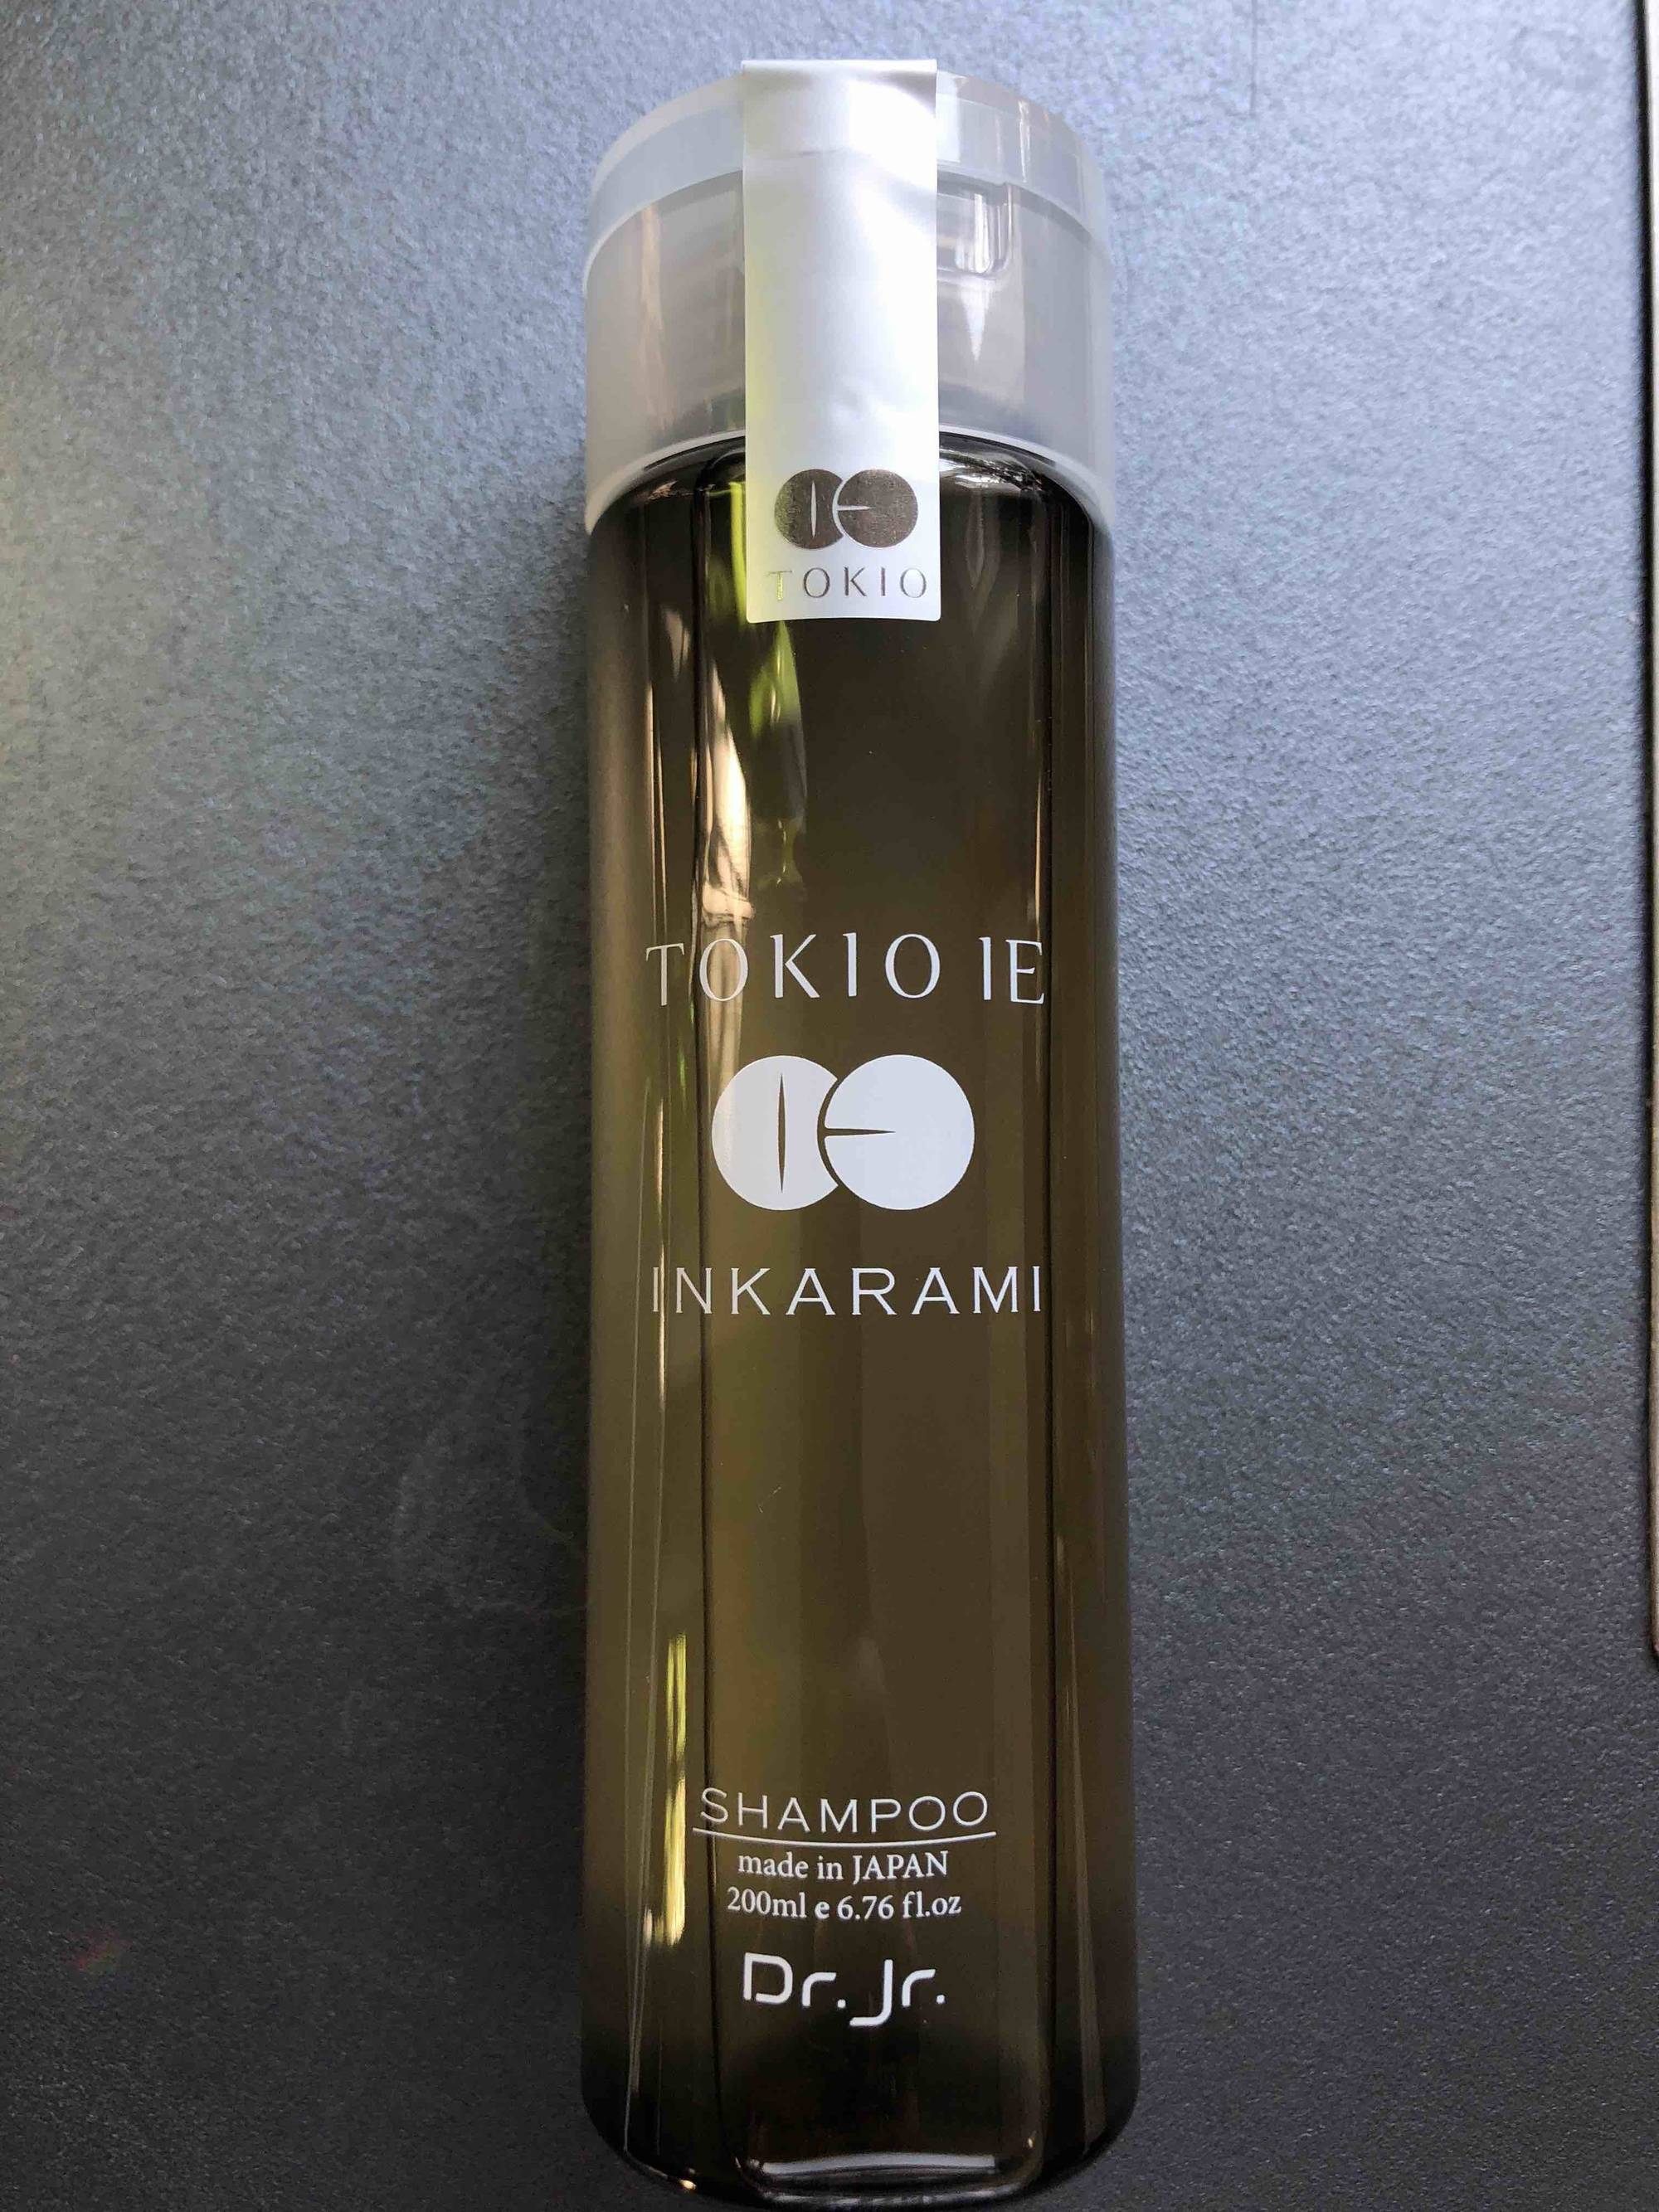 DR. JR. - Tokio IE inkarami - Shampoo